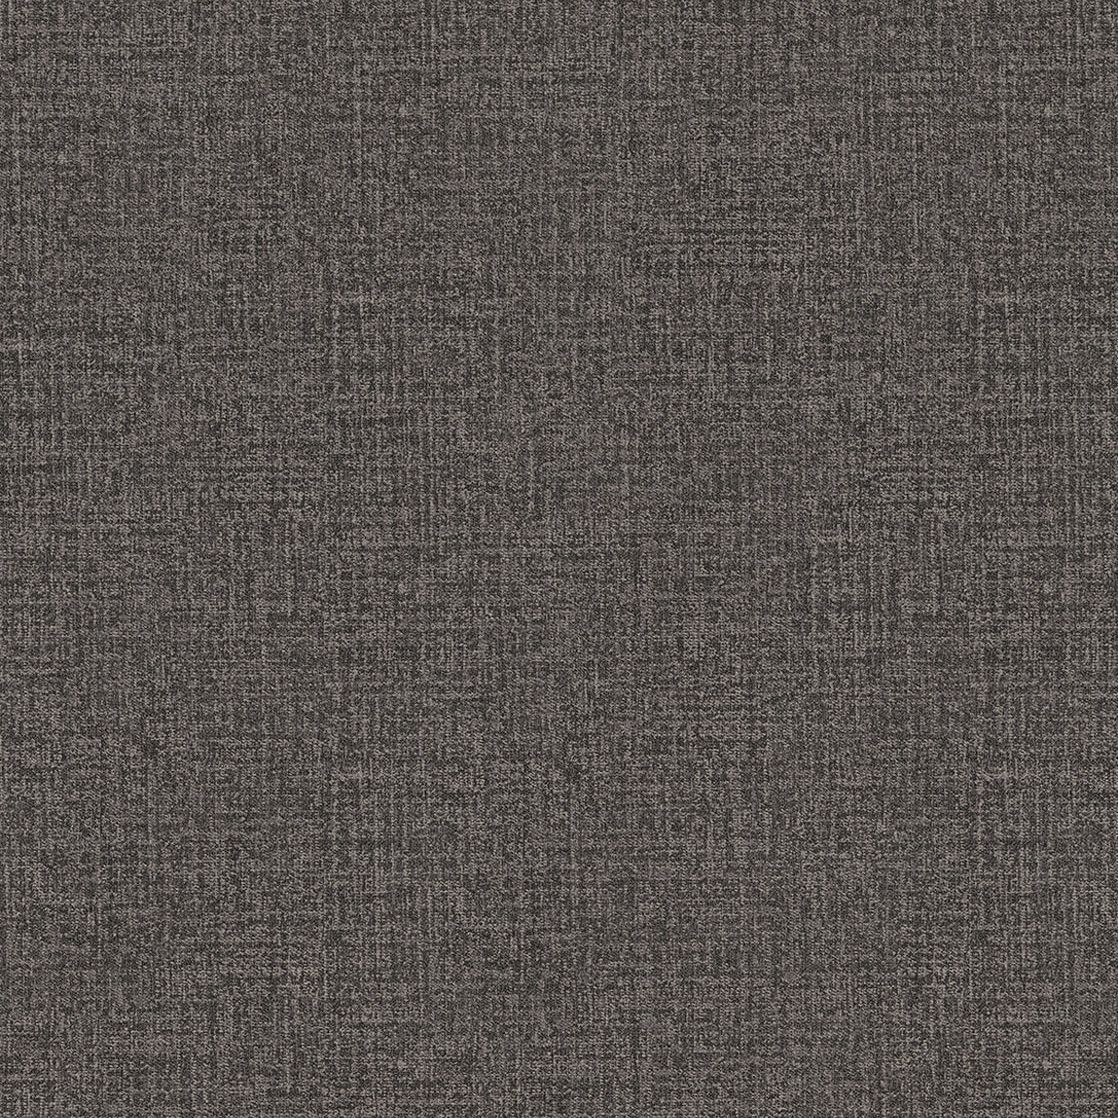 Eijffinger Masterpiece strukturált mintás sötétbarna színű uni tapéta